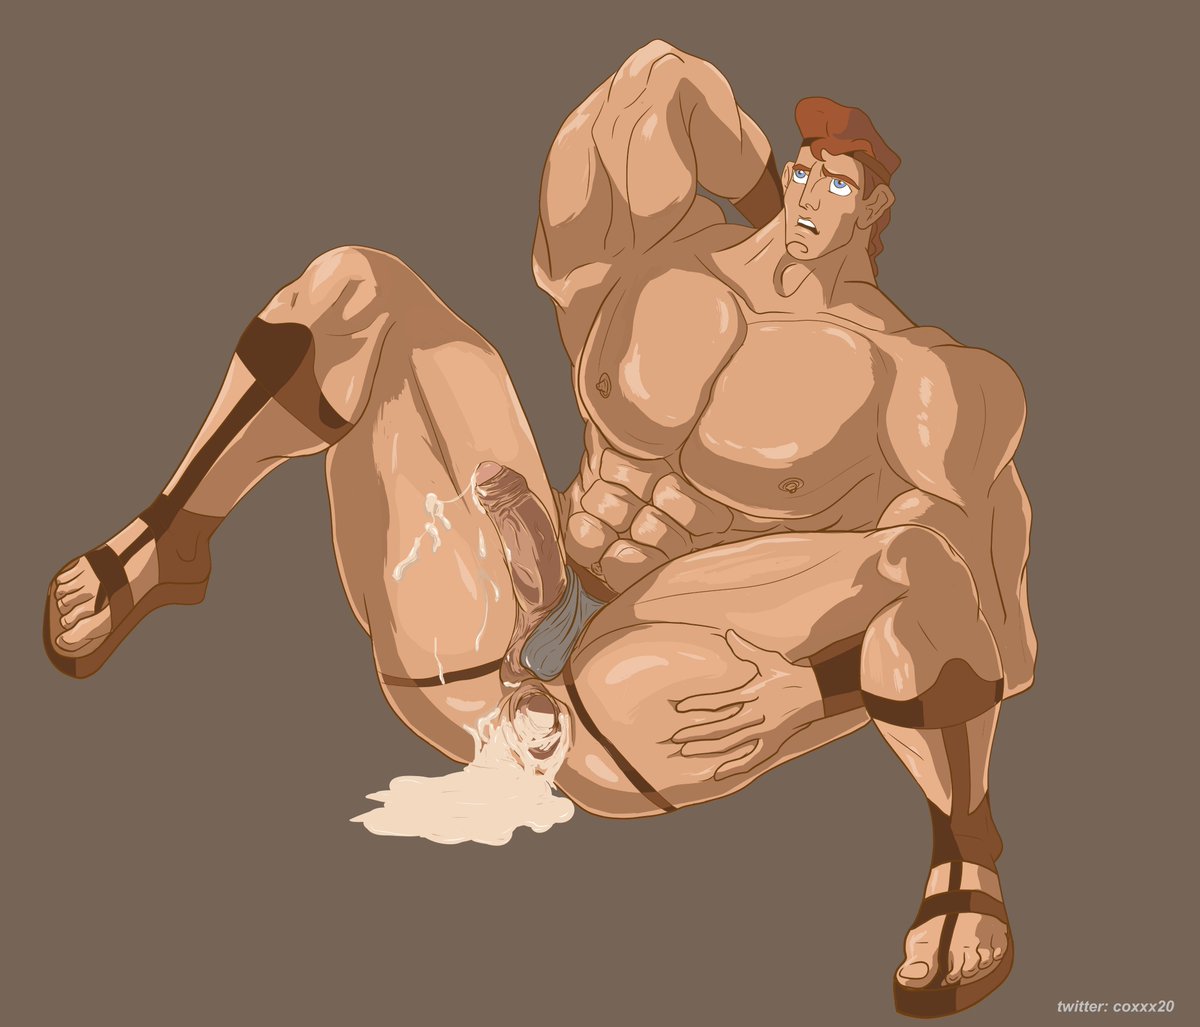 Hercules - hercules - a hero cum dumb #disney #hercules #gay #nsfw. hercule...